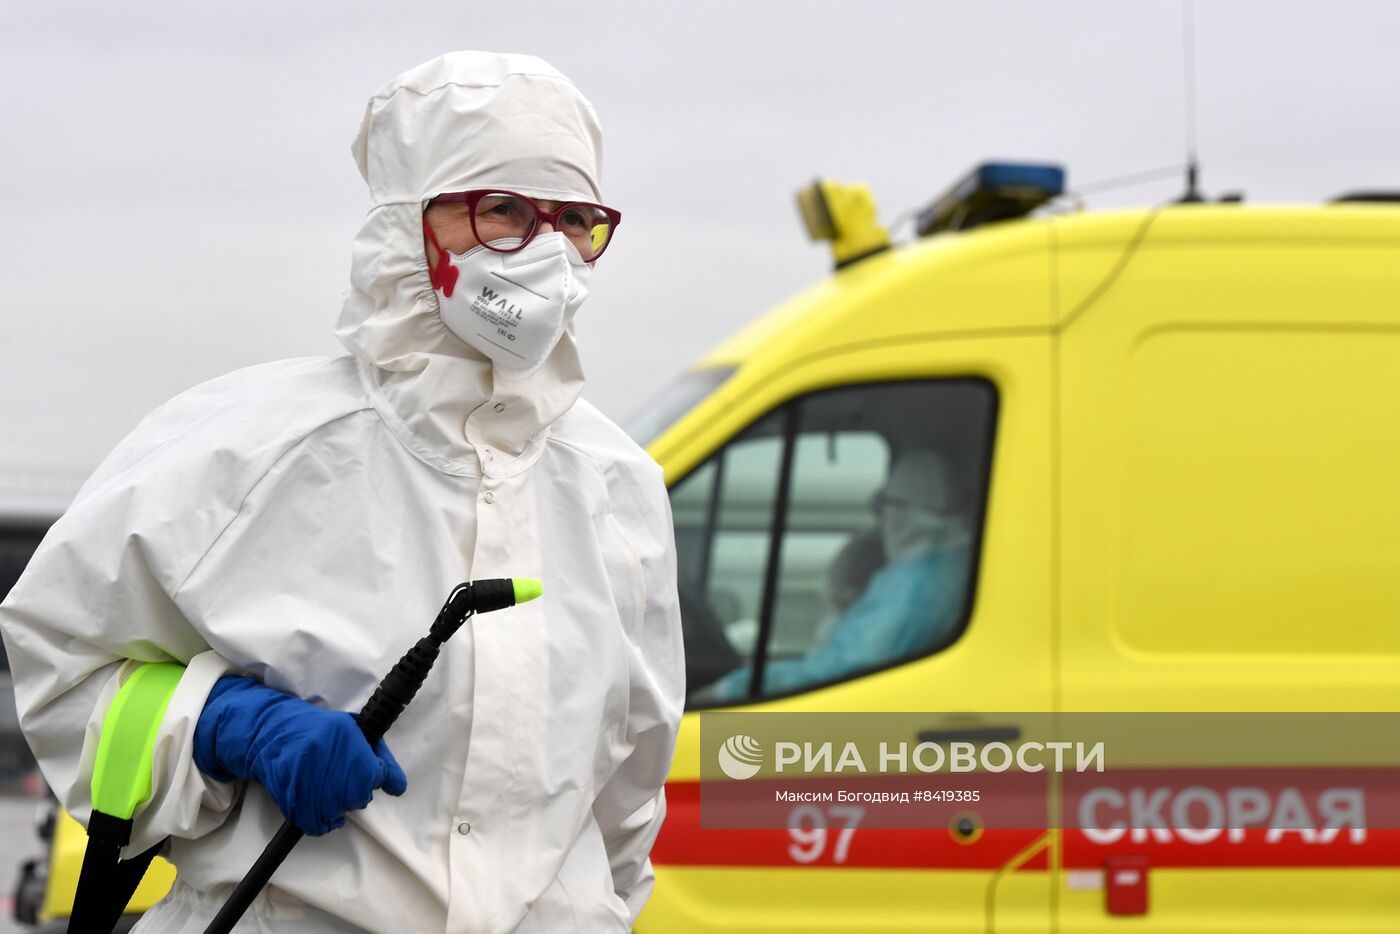 Учение по предотвращению распространения холеры в аэропорту Казани